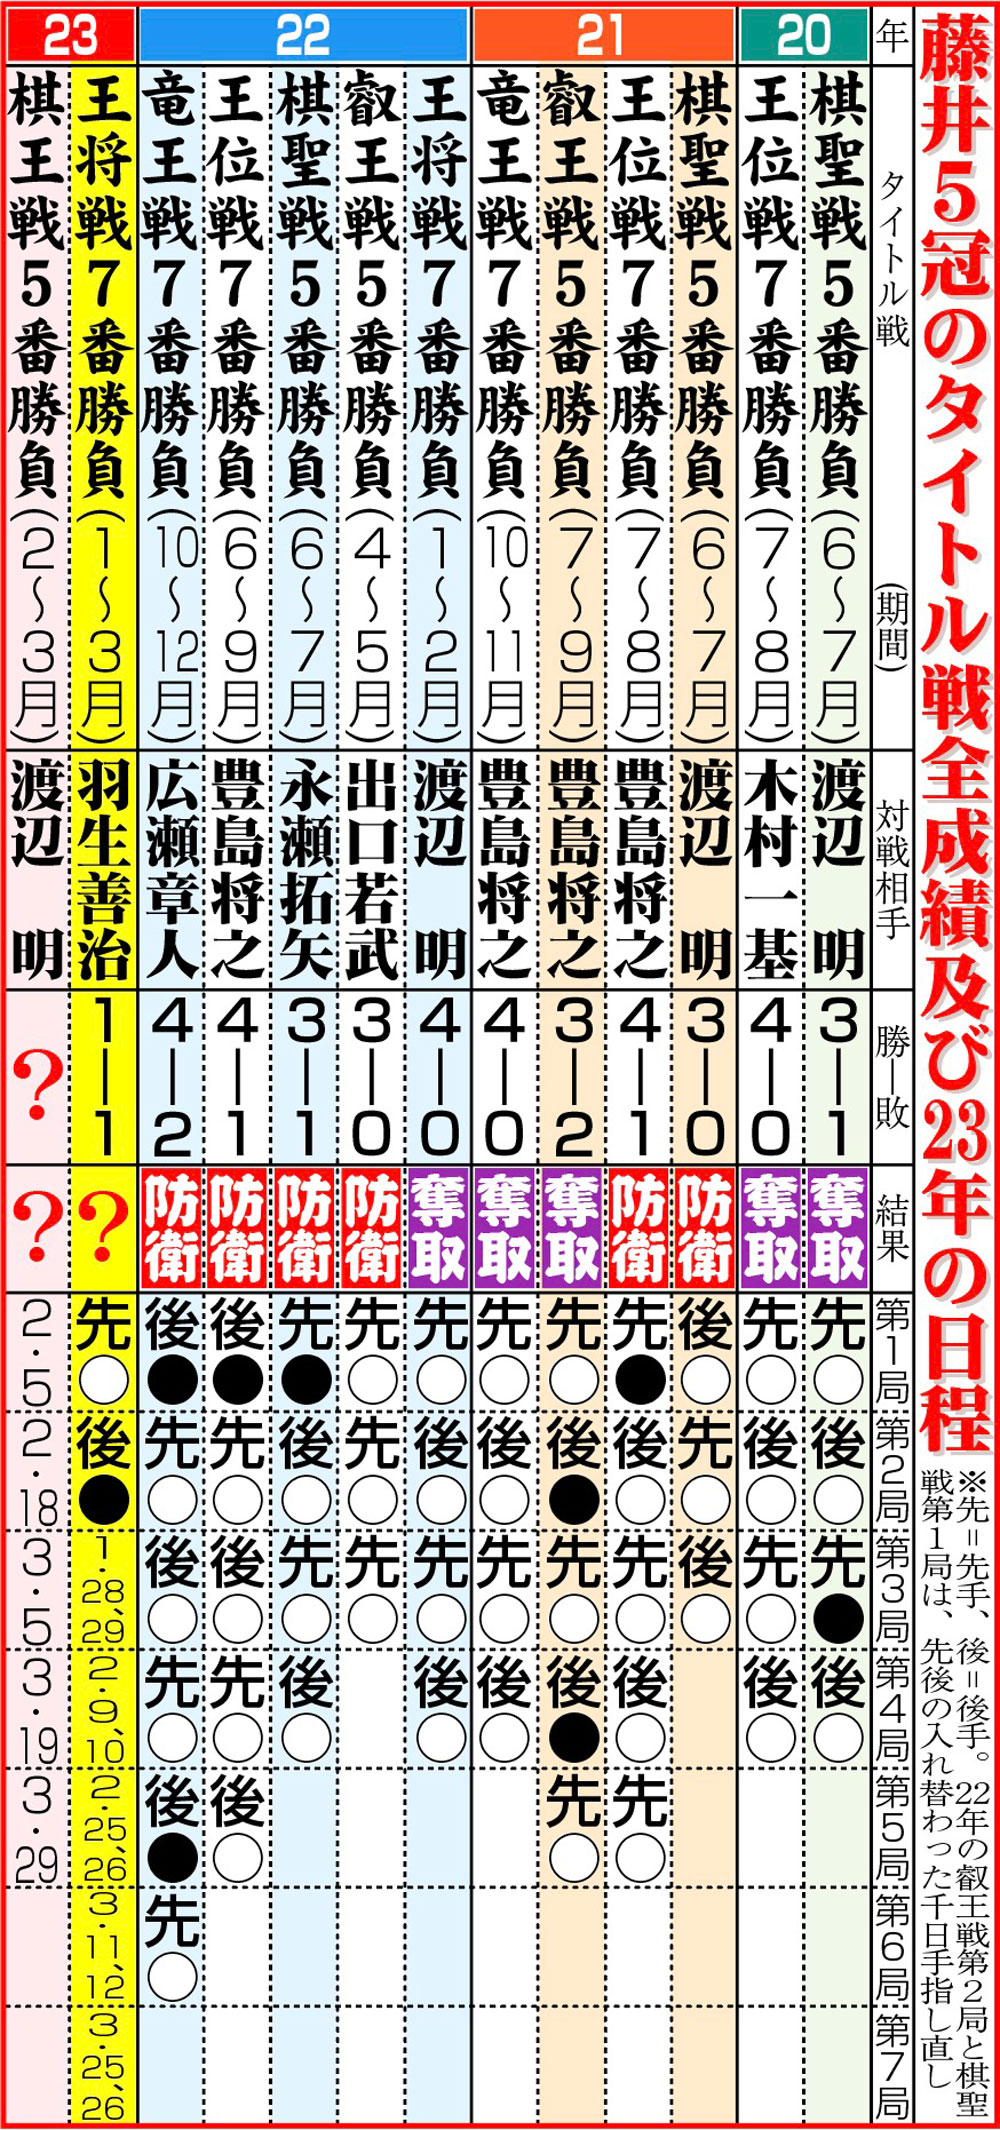 【イラスト】藤井5冠のタイトル戦全成績及び23年の日程